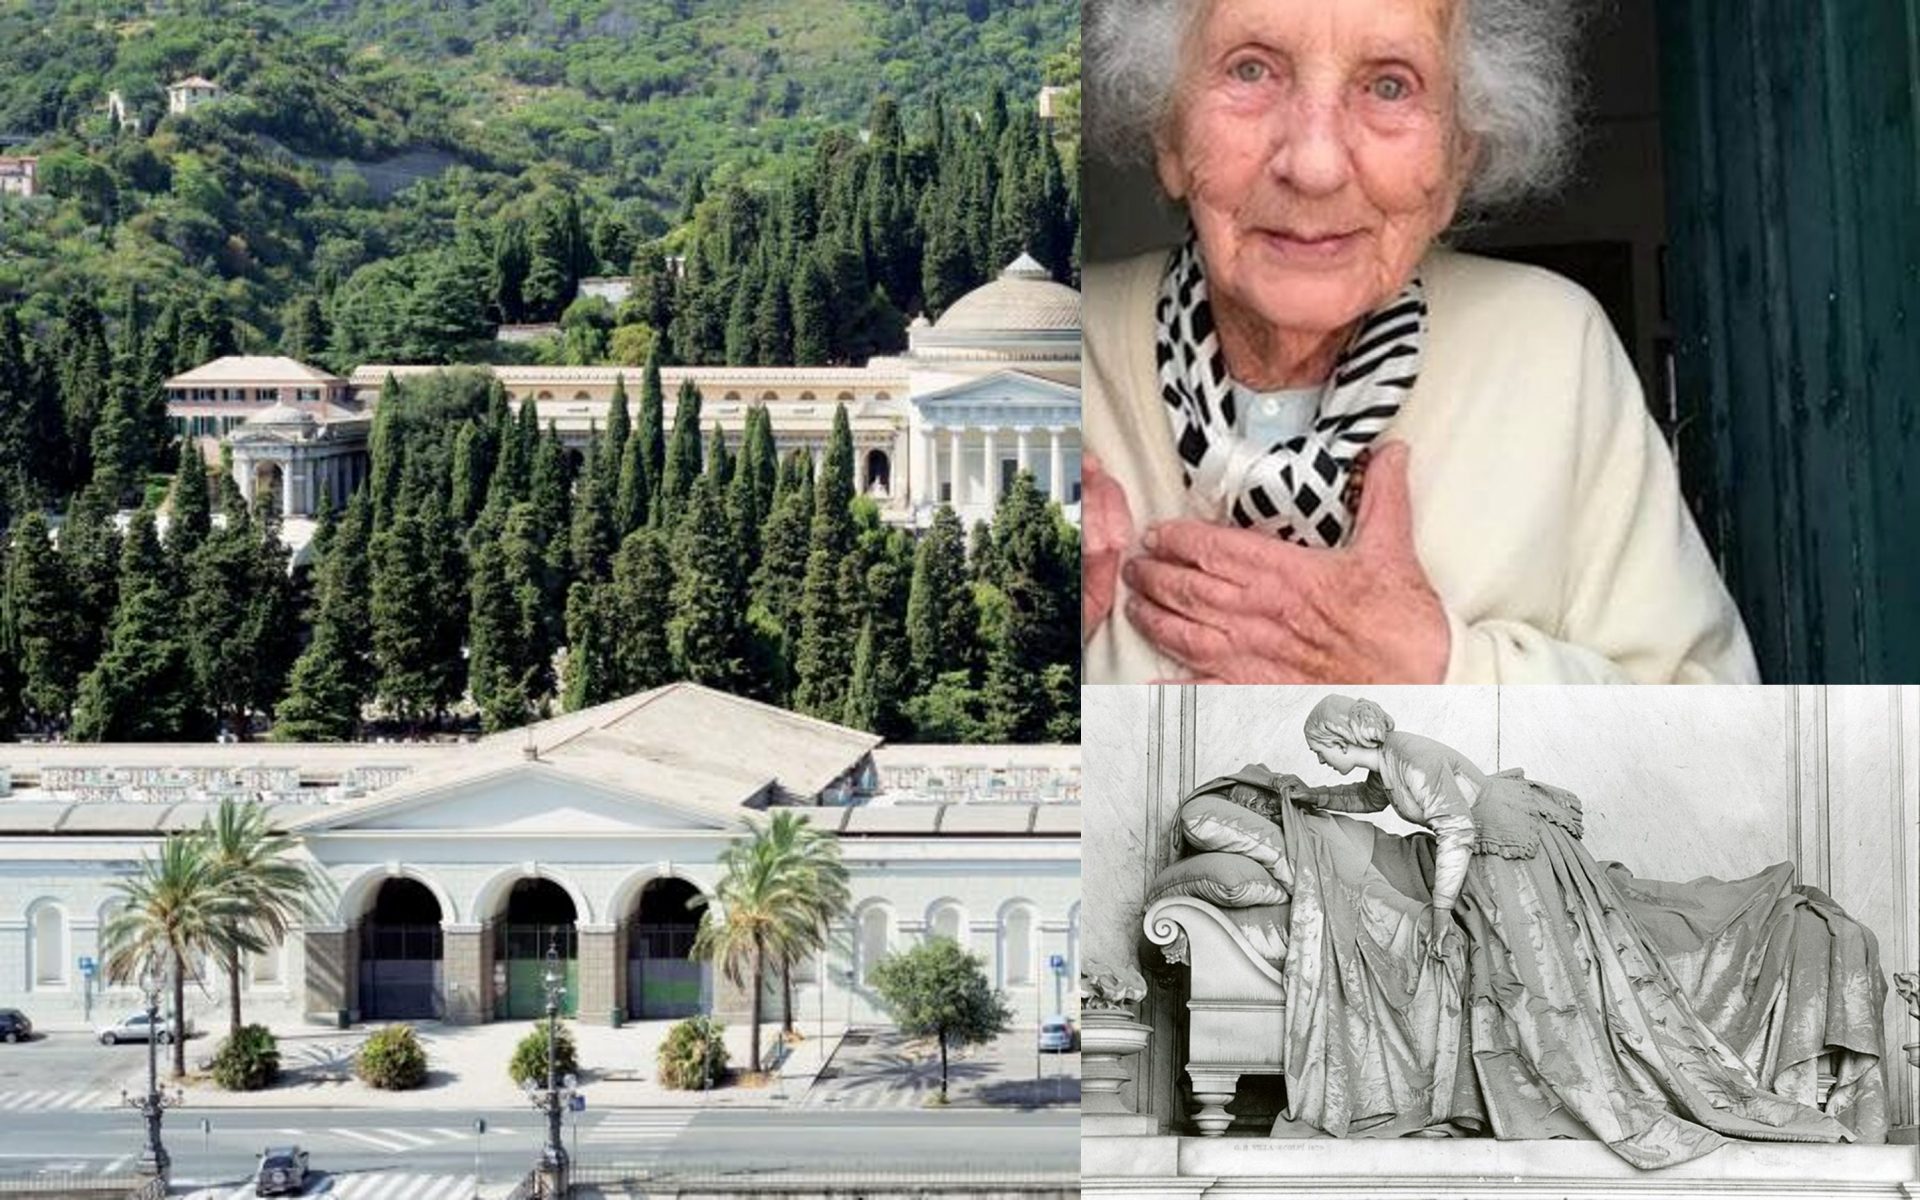 Il cimitero monumentale di Staglieno, a Genova, diventa palcoscenico per un'opera teatrale dedicata alle foto di Lisetta Carmi, che in questo luogo produsse alcuni dei suoi scatti più significati.